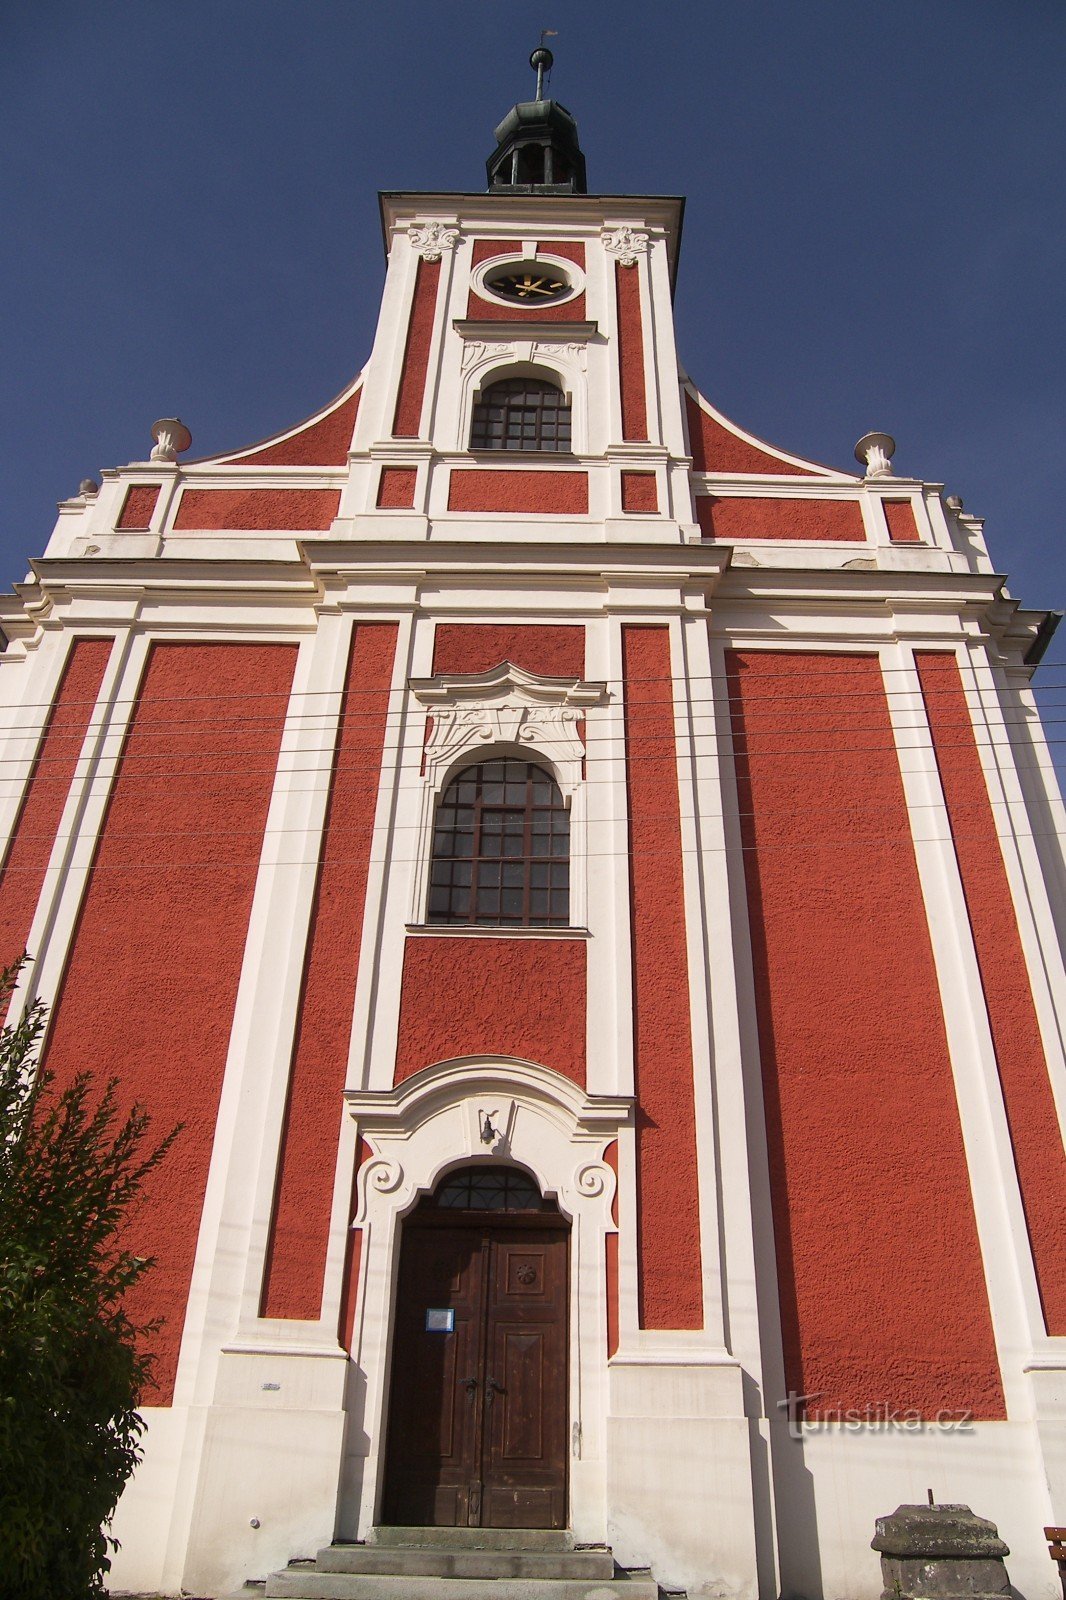 LICHNOV-ST. SFANTUL NICOLAE